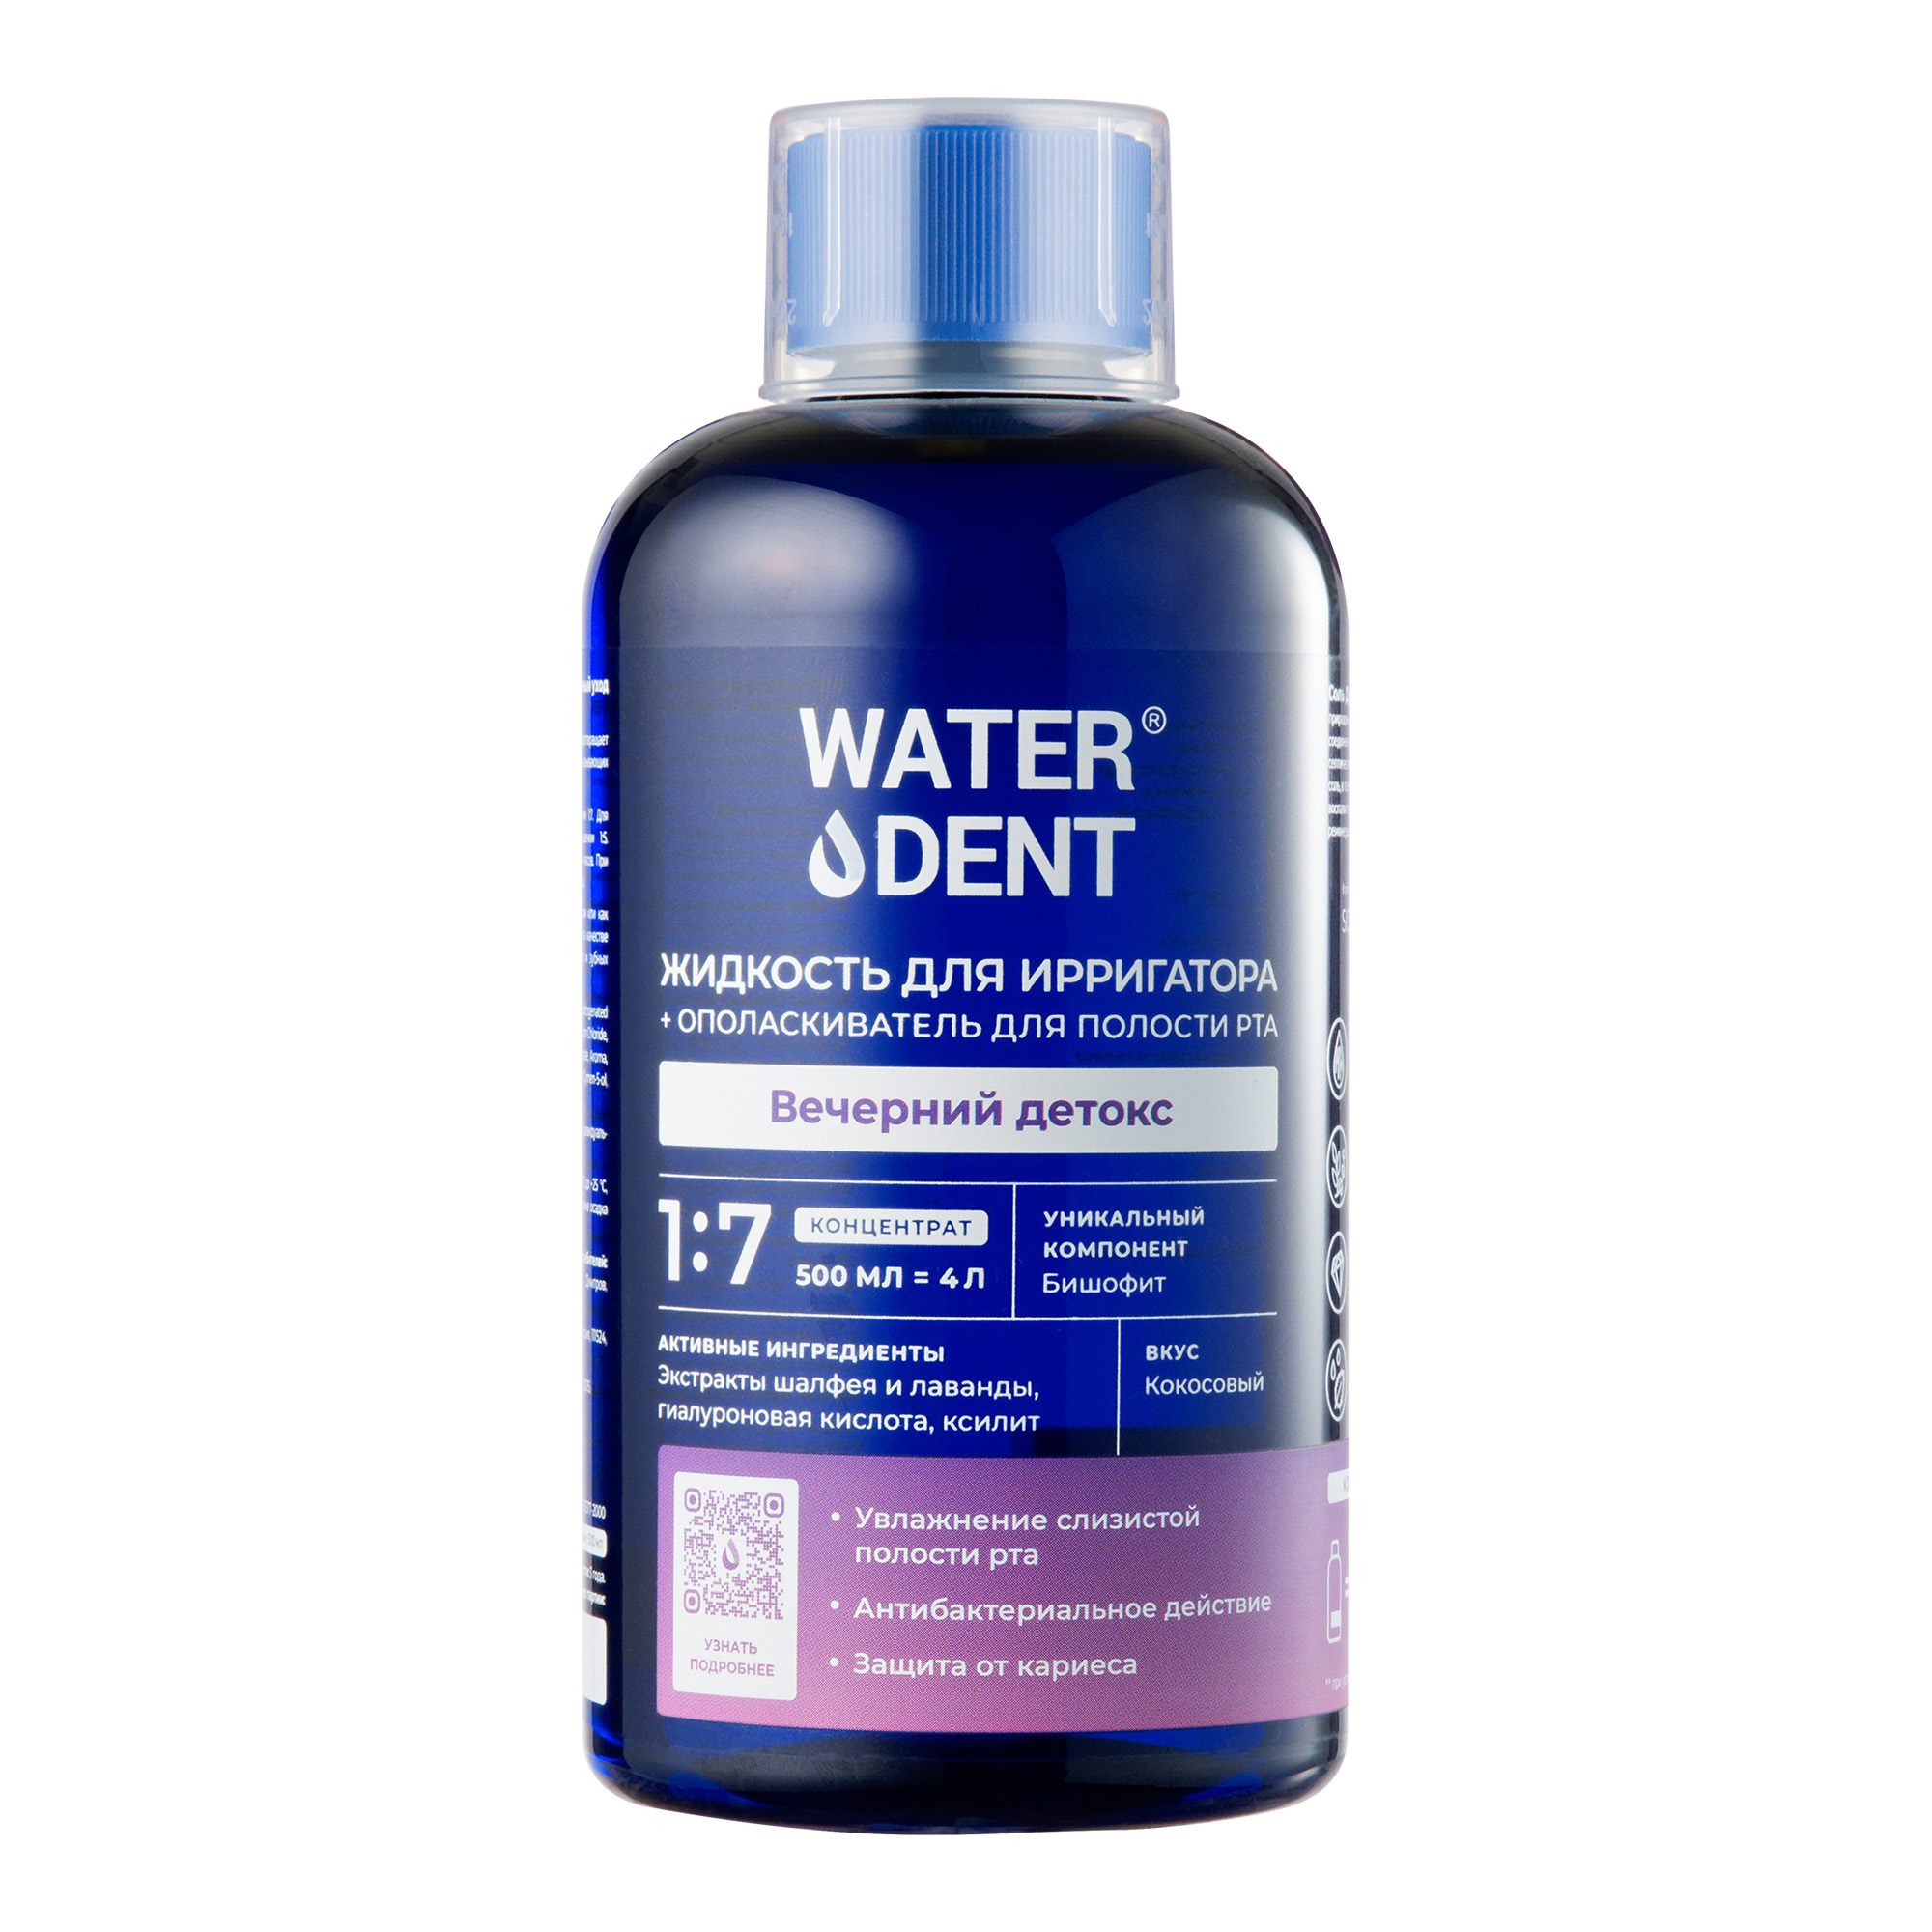 Waterdent, жидкость для ирригатора Вечерний детокс Кокос, флакон 500 мл жидкость для ирригатора waterdent утренний детокс 500 мл